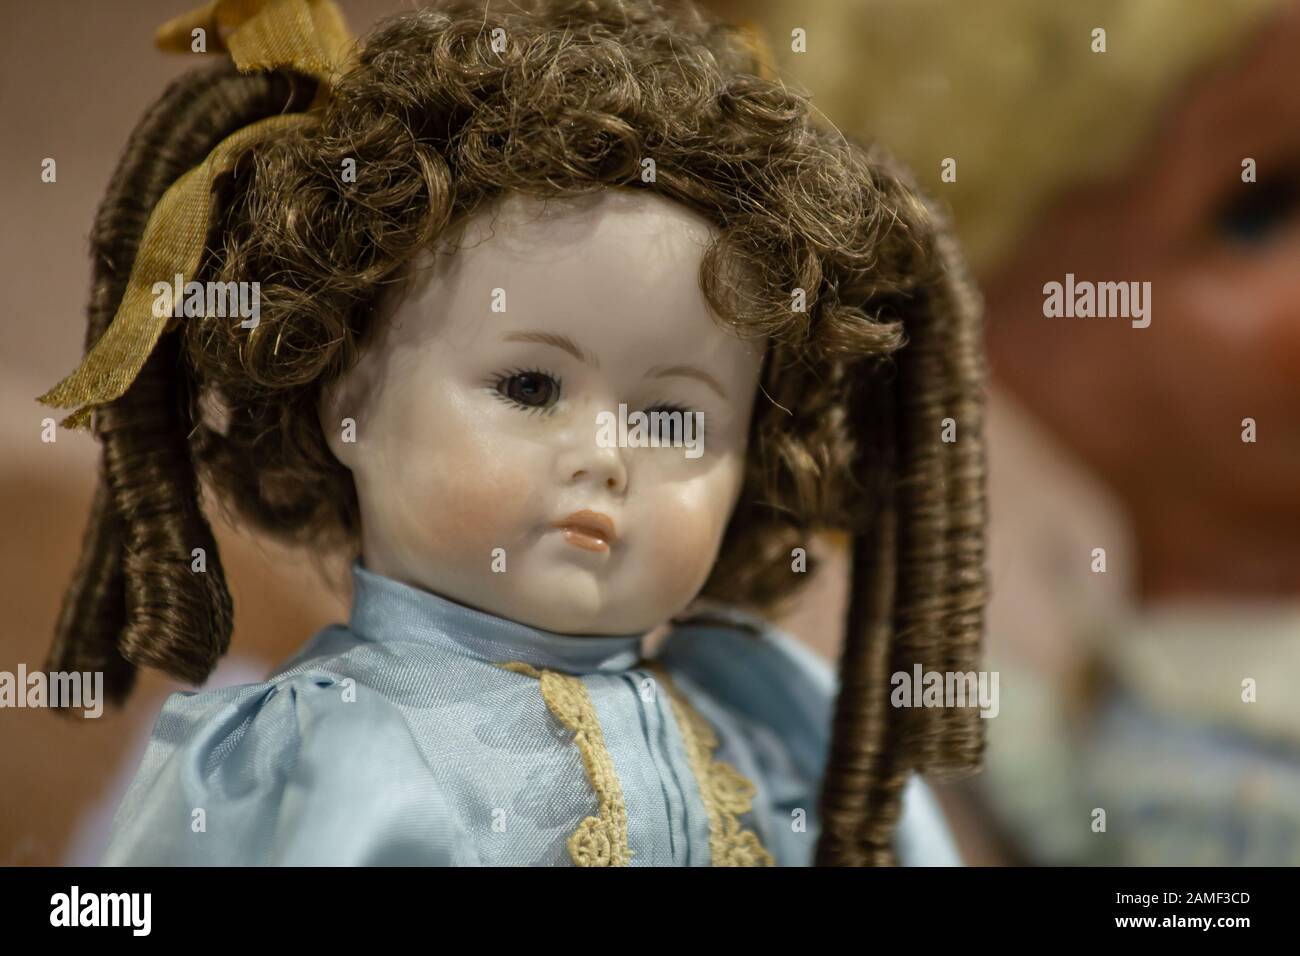 Antike Vintage-Puppe mit Keramikgesicht, braunem Haar mit Pfeifenlocken und  mittelalterlichen Kleidungsstücken Stockfotografie - Alamy